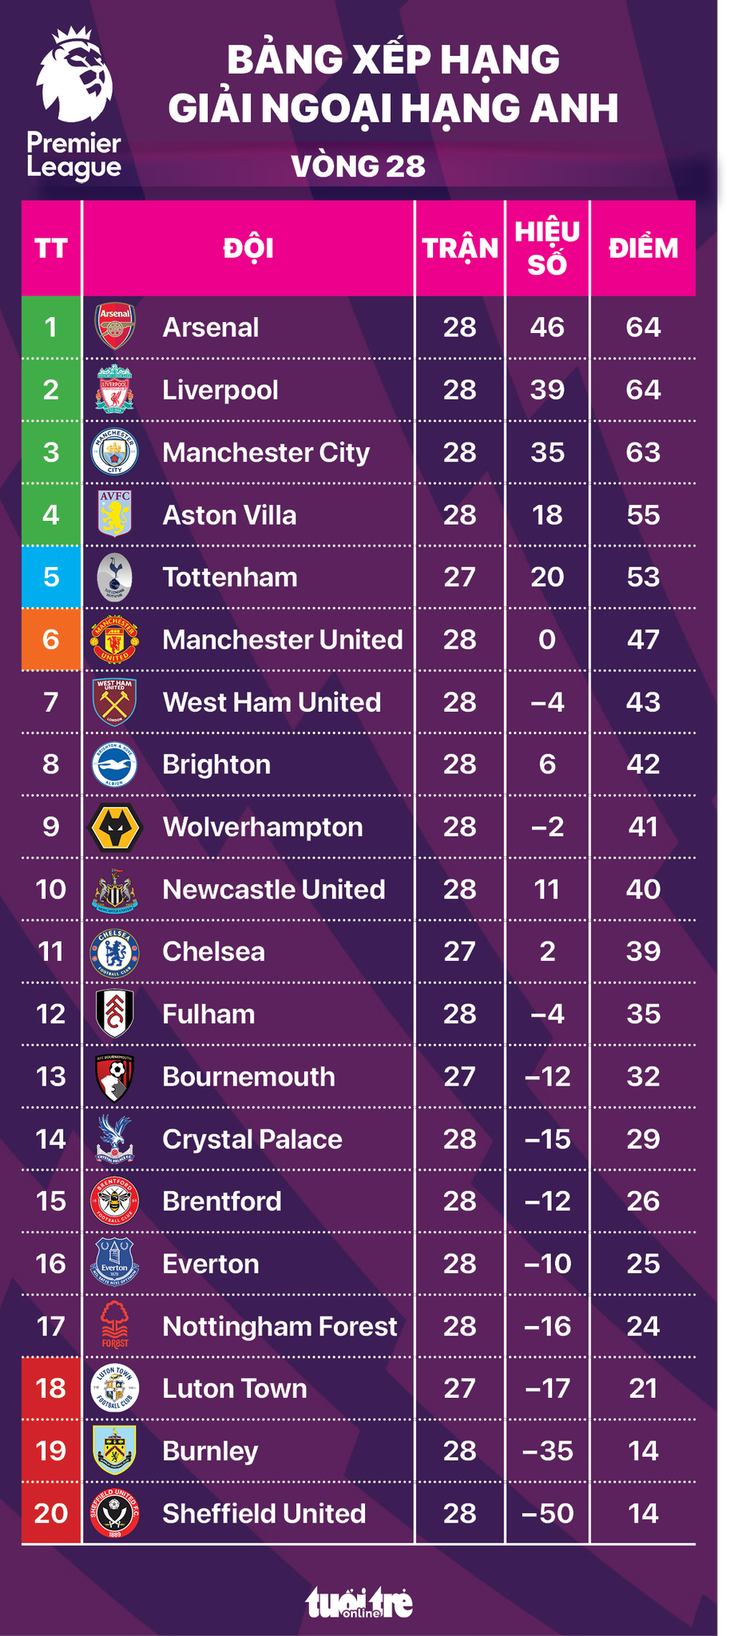 Bảng xếp hạng Premier League sau vòng 28: Arsenal nhất, Man United thứ sáu - Đồ họa: AN BÌNH